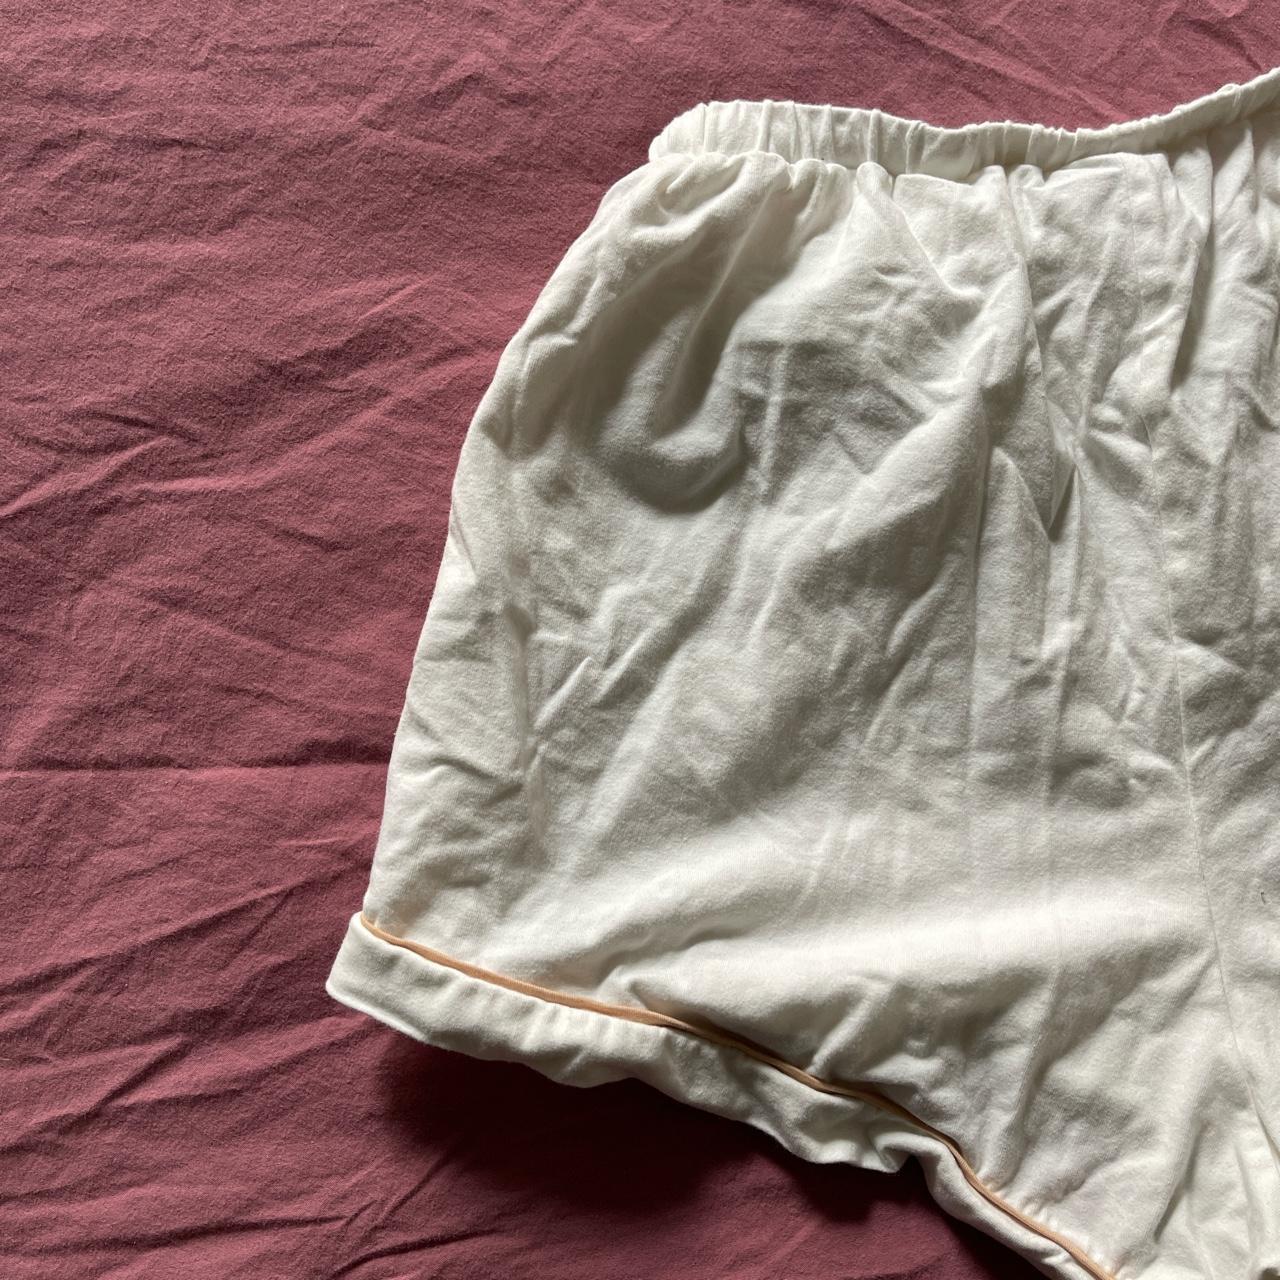 Product Image 3 - High Waisted Sabo Shorts. Size: